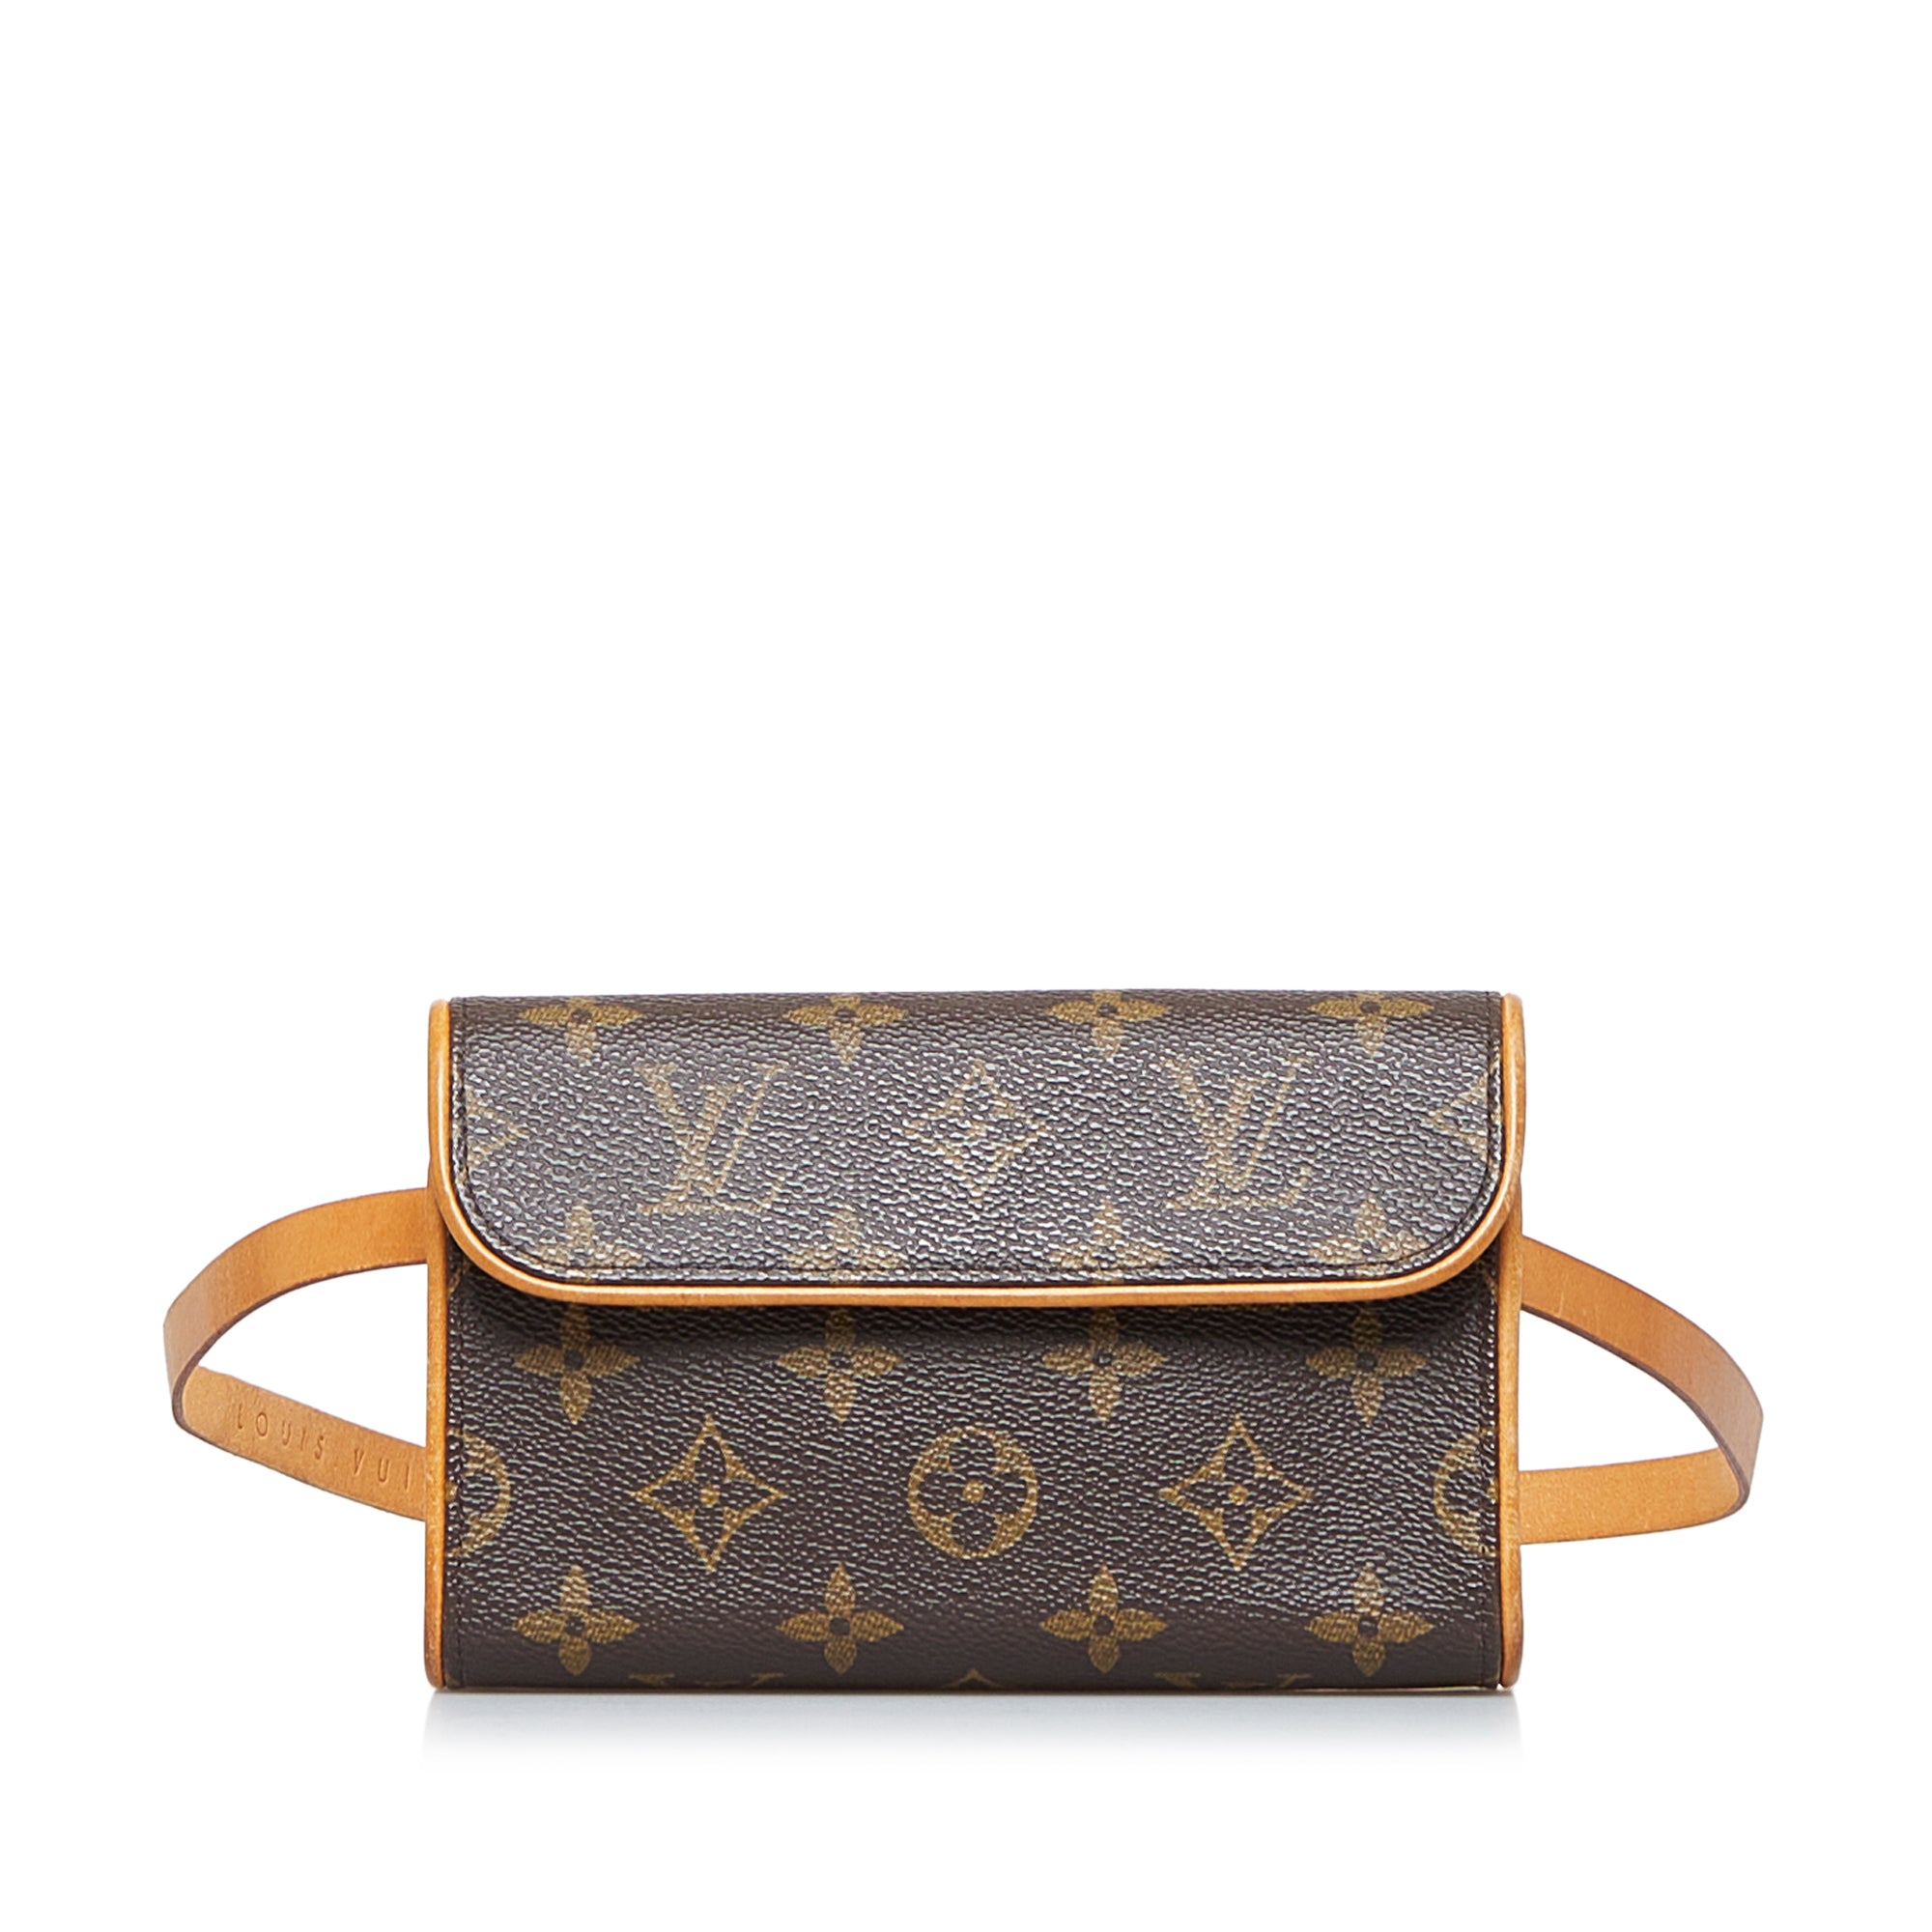 Louis Vuitton Monogram Florentine Pochette Belt Bag at the best price